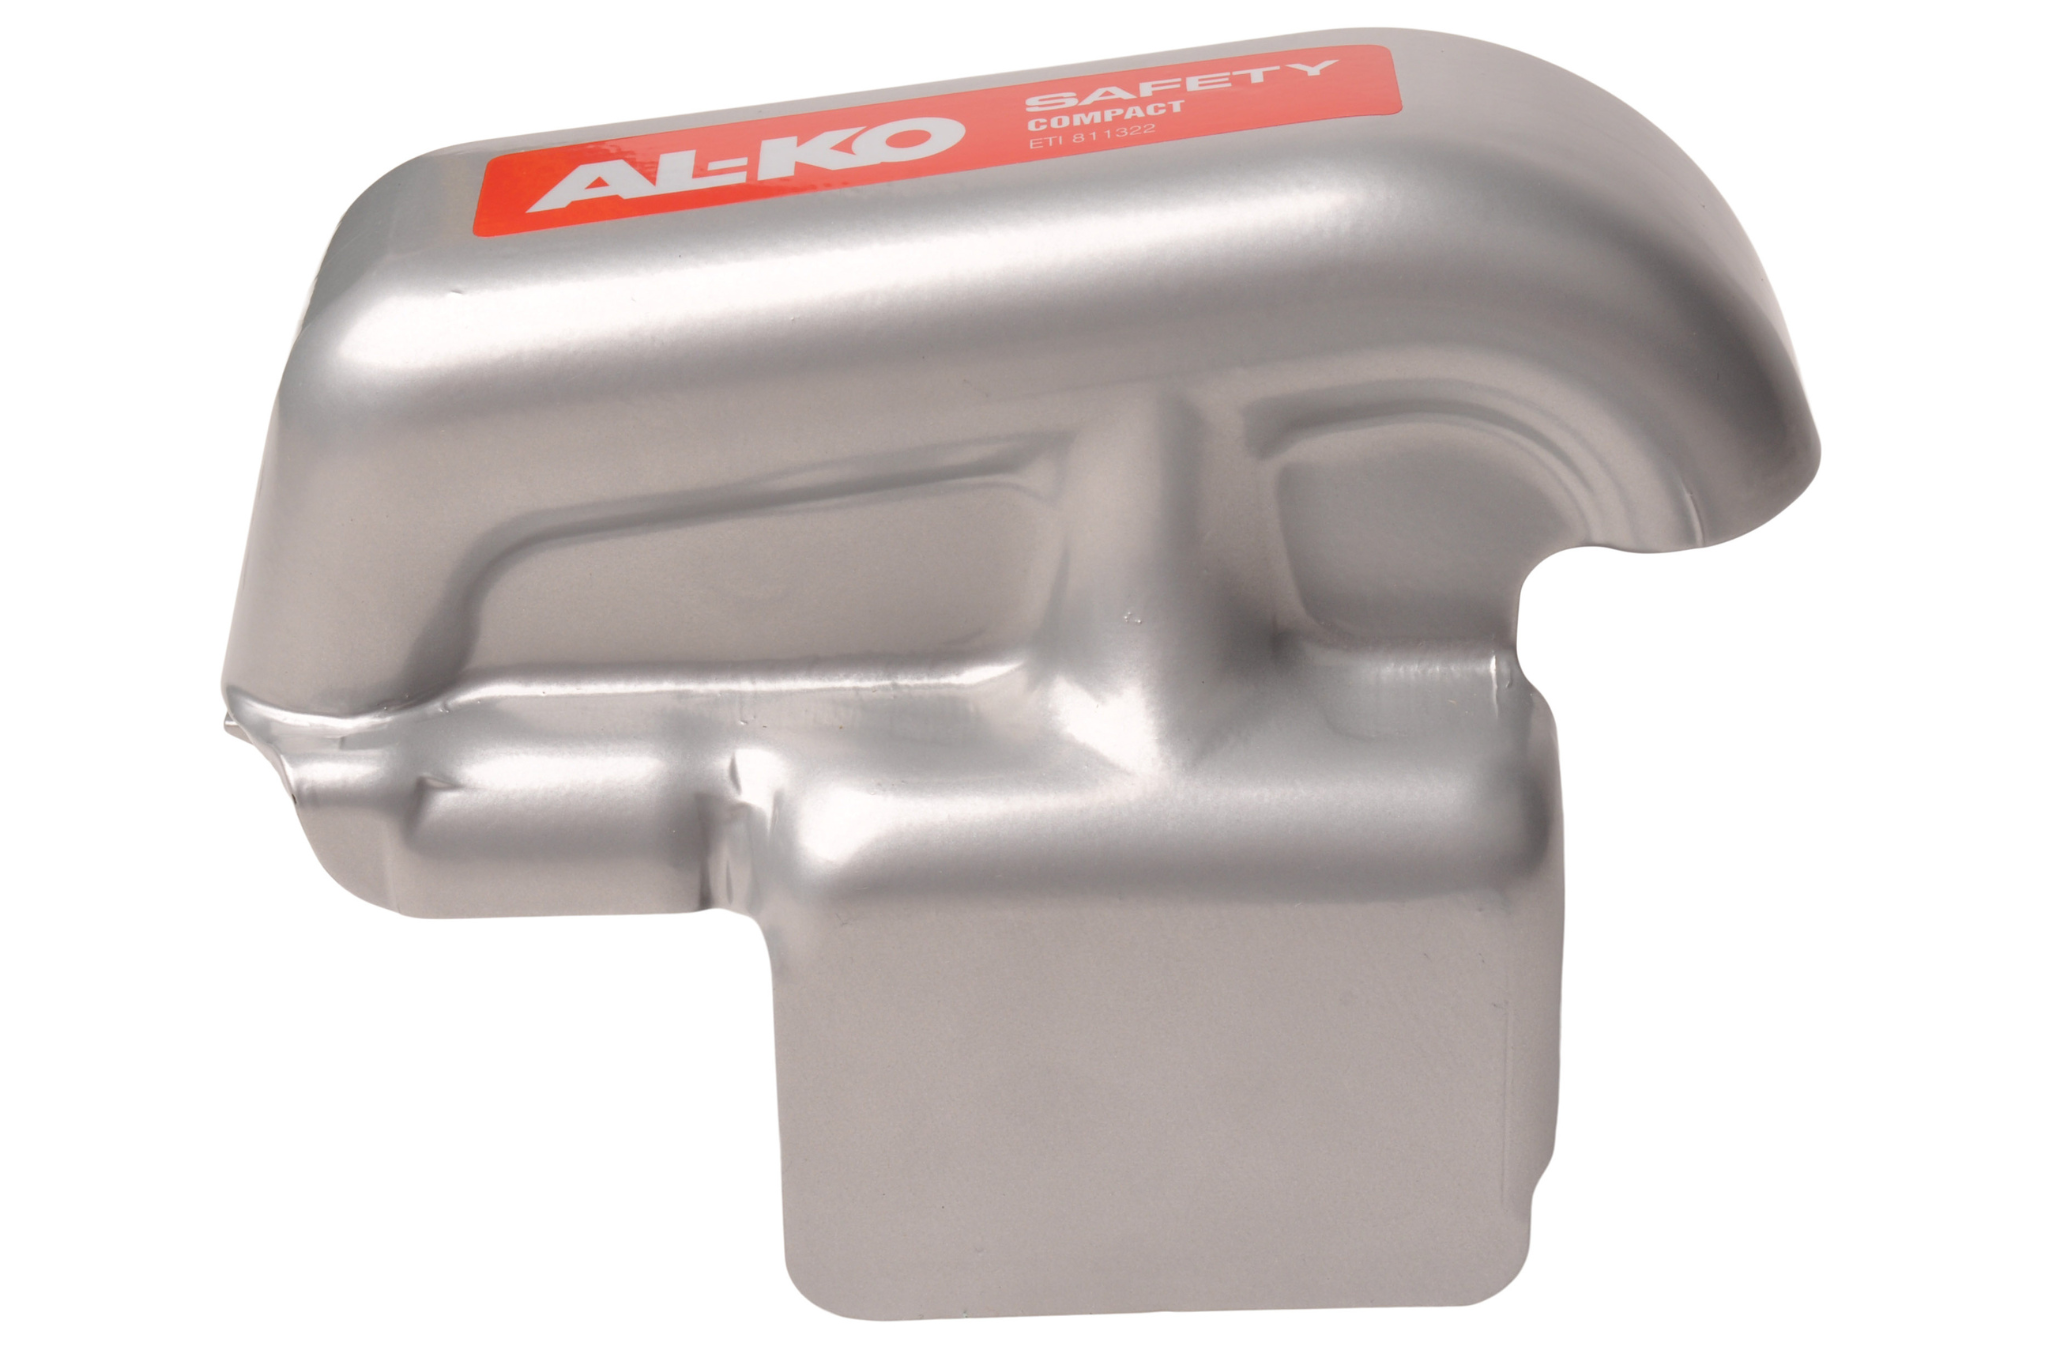 Antivol Safety Compact pour tête d'attelage AK160 / 300 AL-KO 1310890